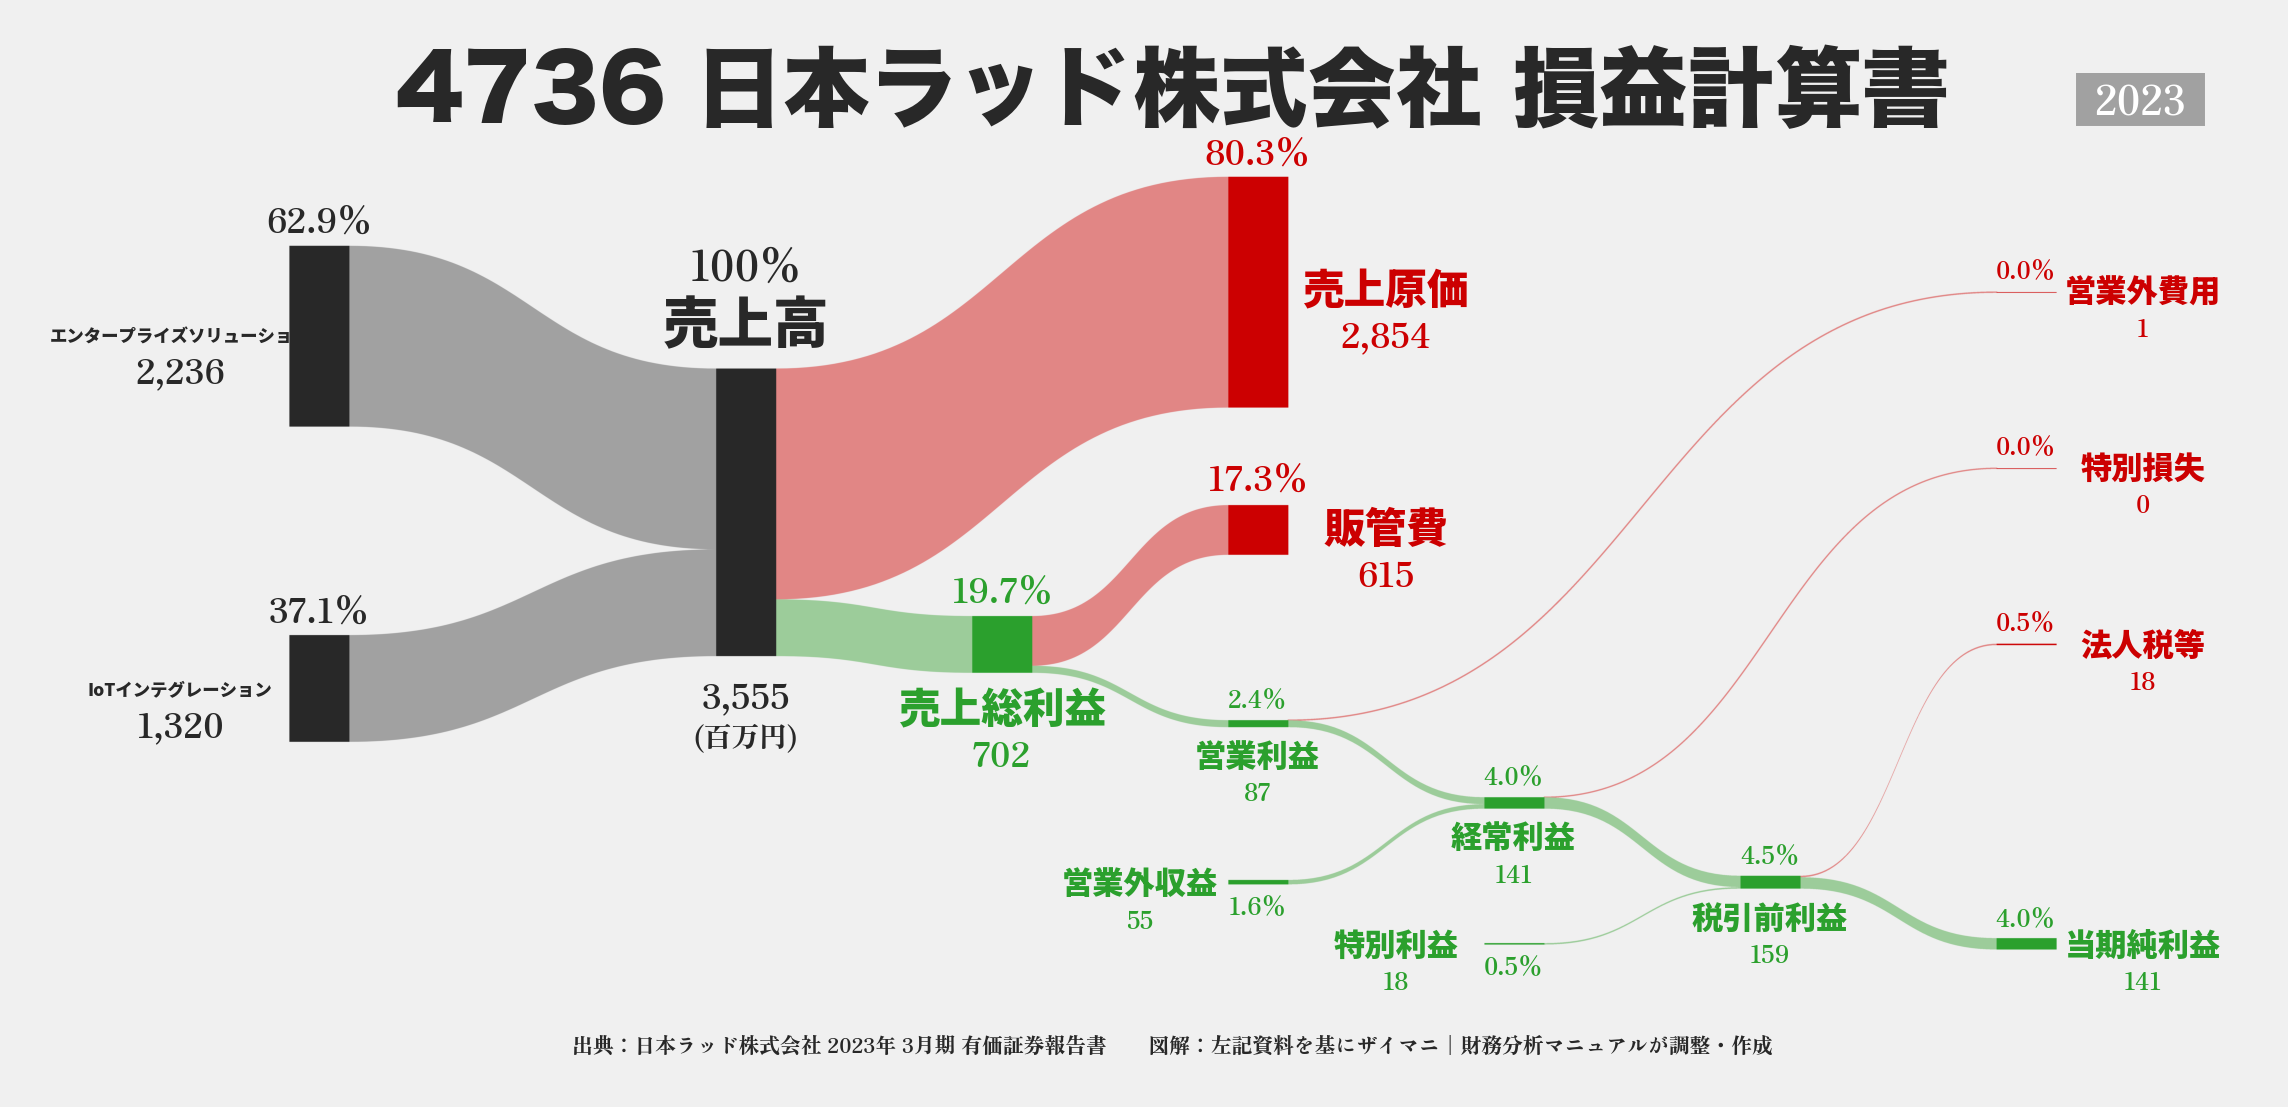 日本ラッド｜4736の損益計算書サンキーダイアグラム図解資料